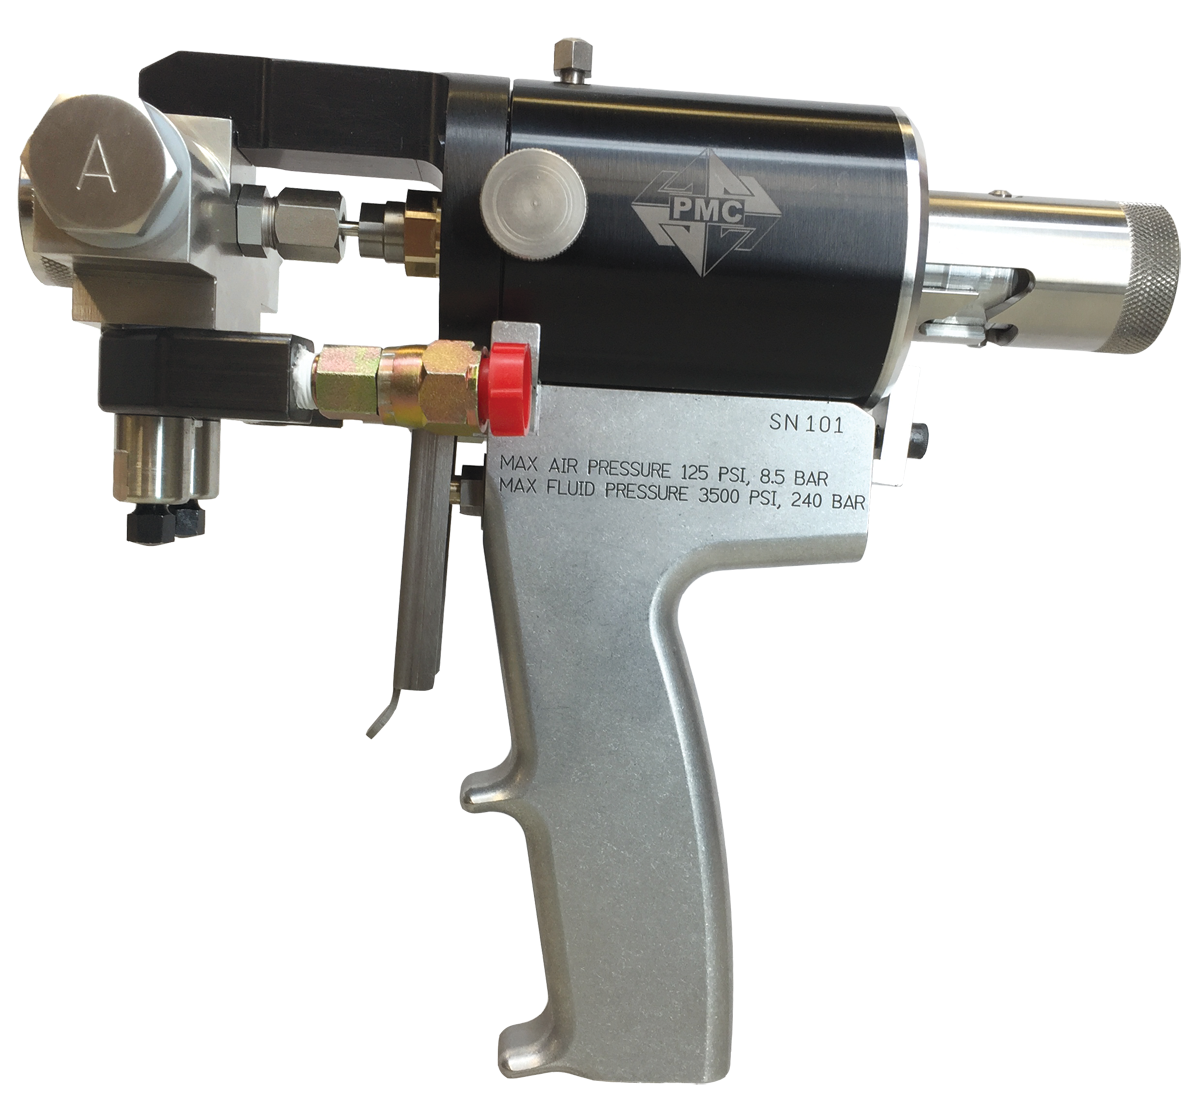 PMC PX-7 #10 Module Mechanical Purge Gun